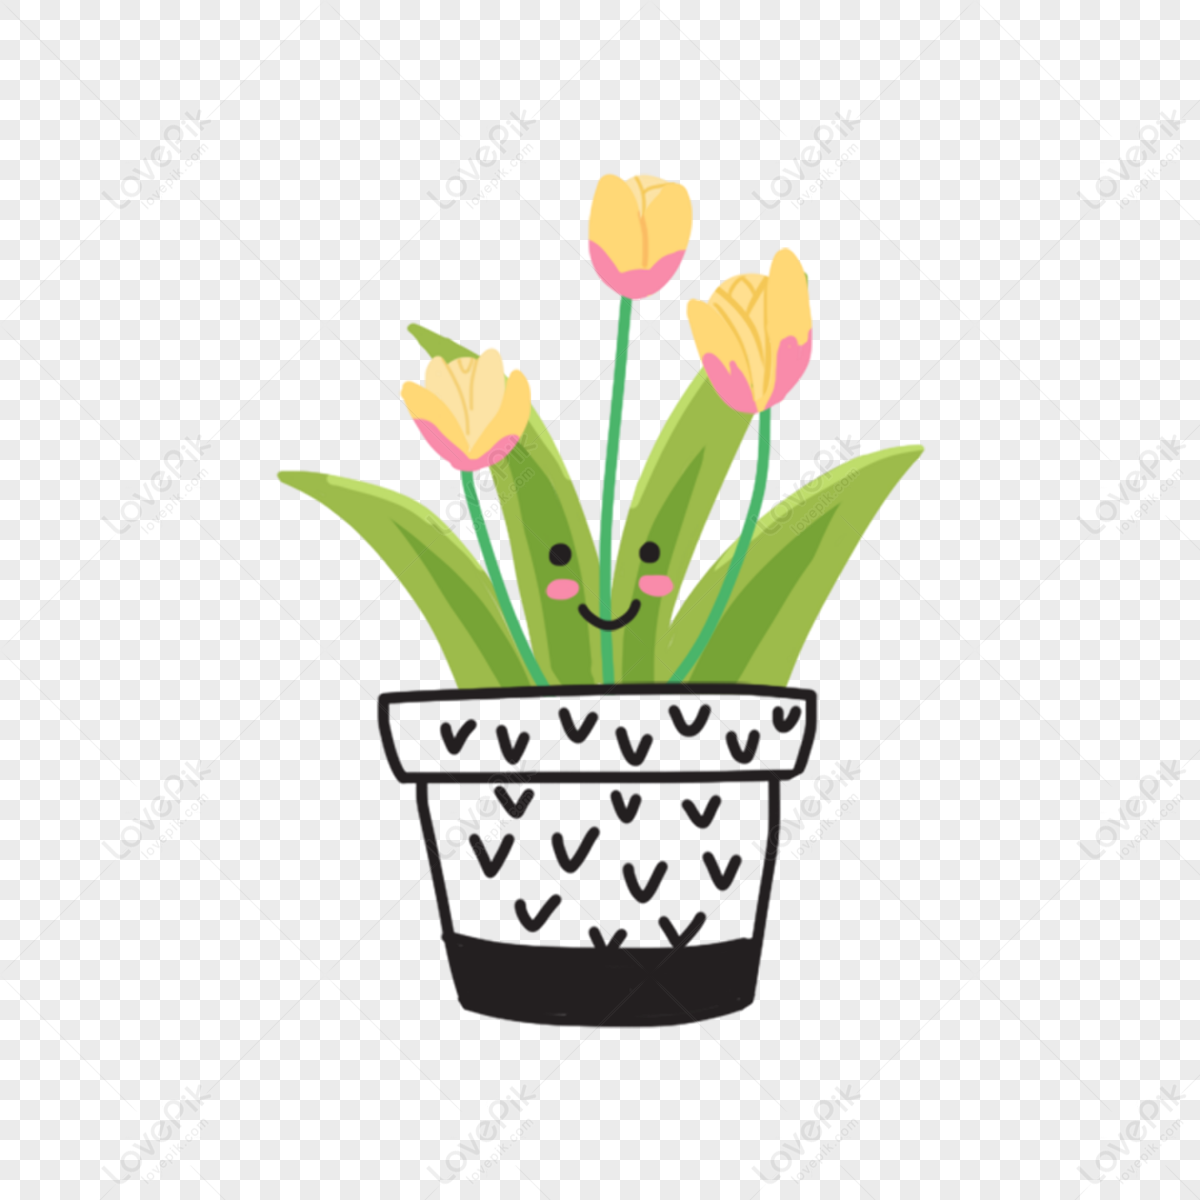 How to Draw Flower Pot | TikTok